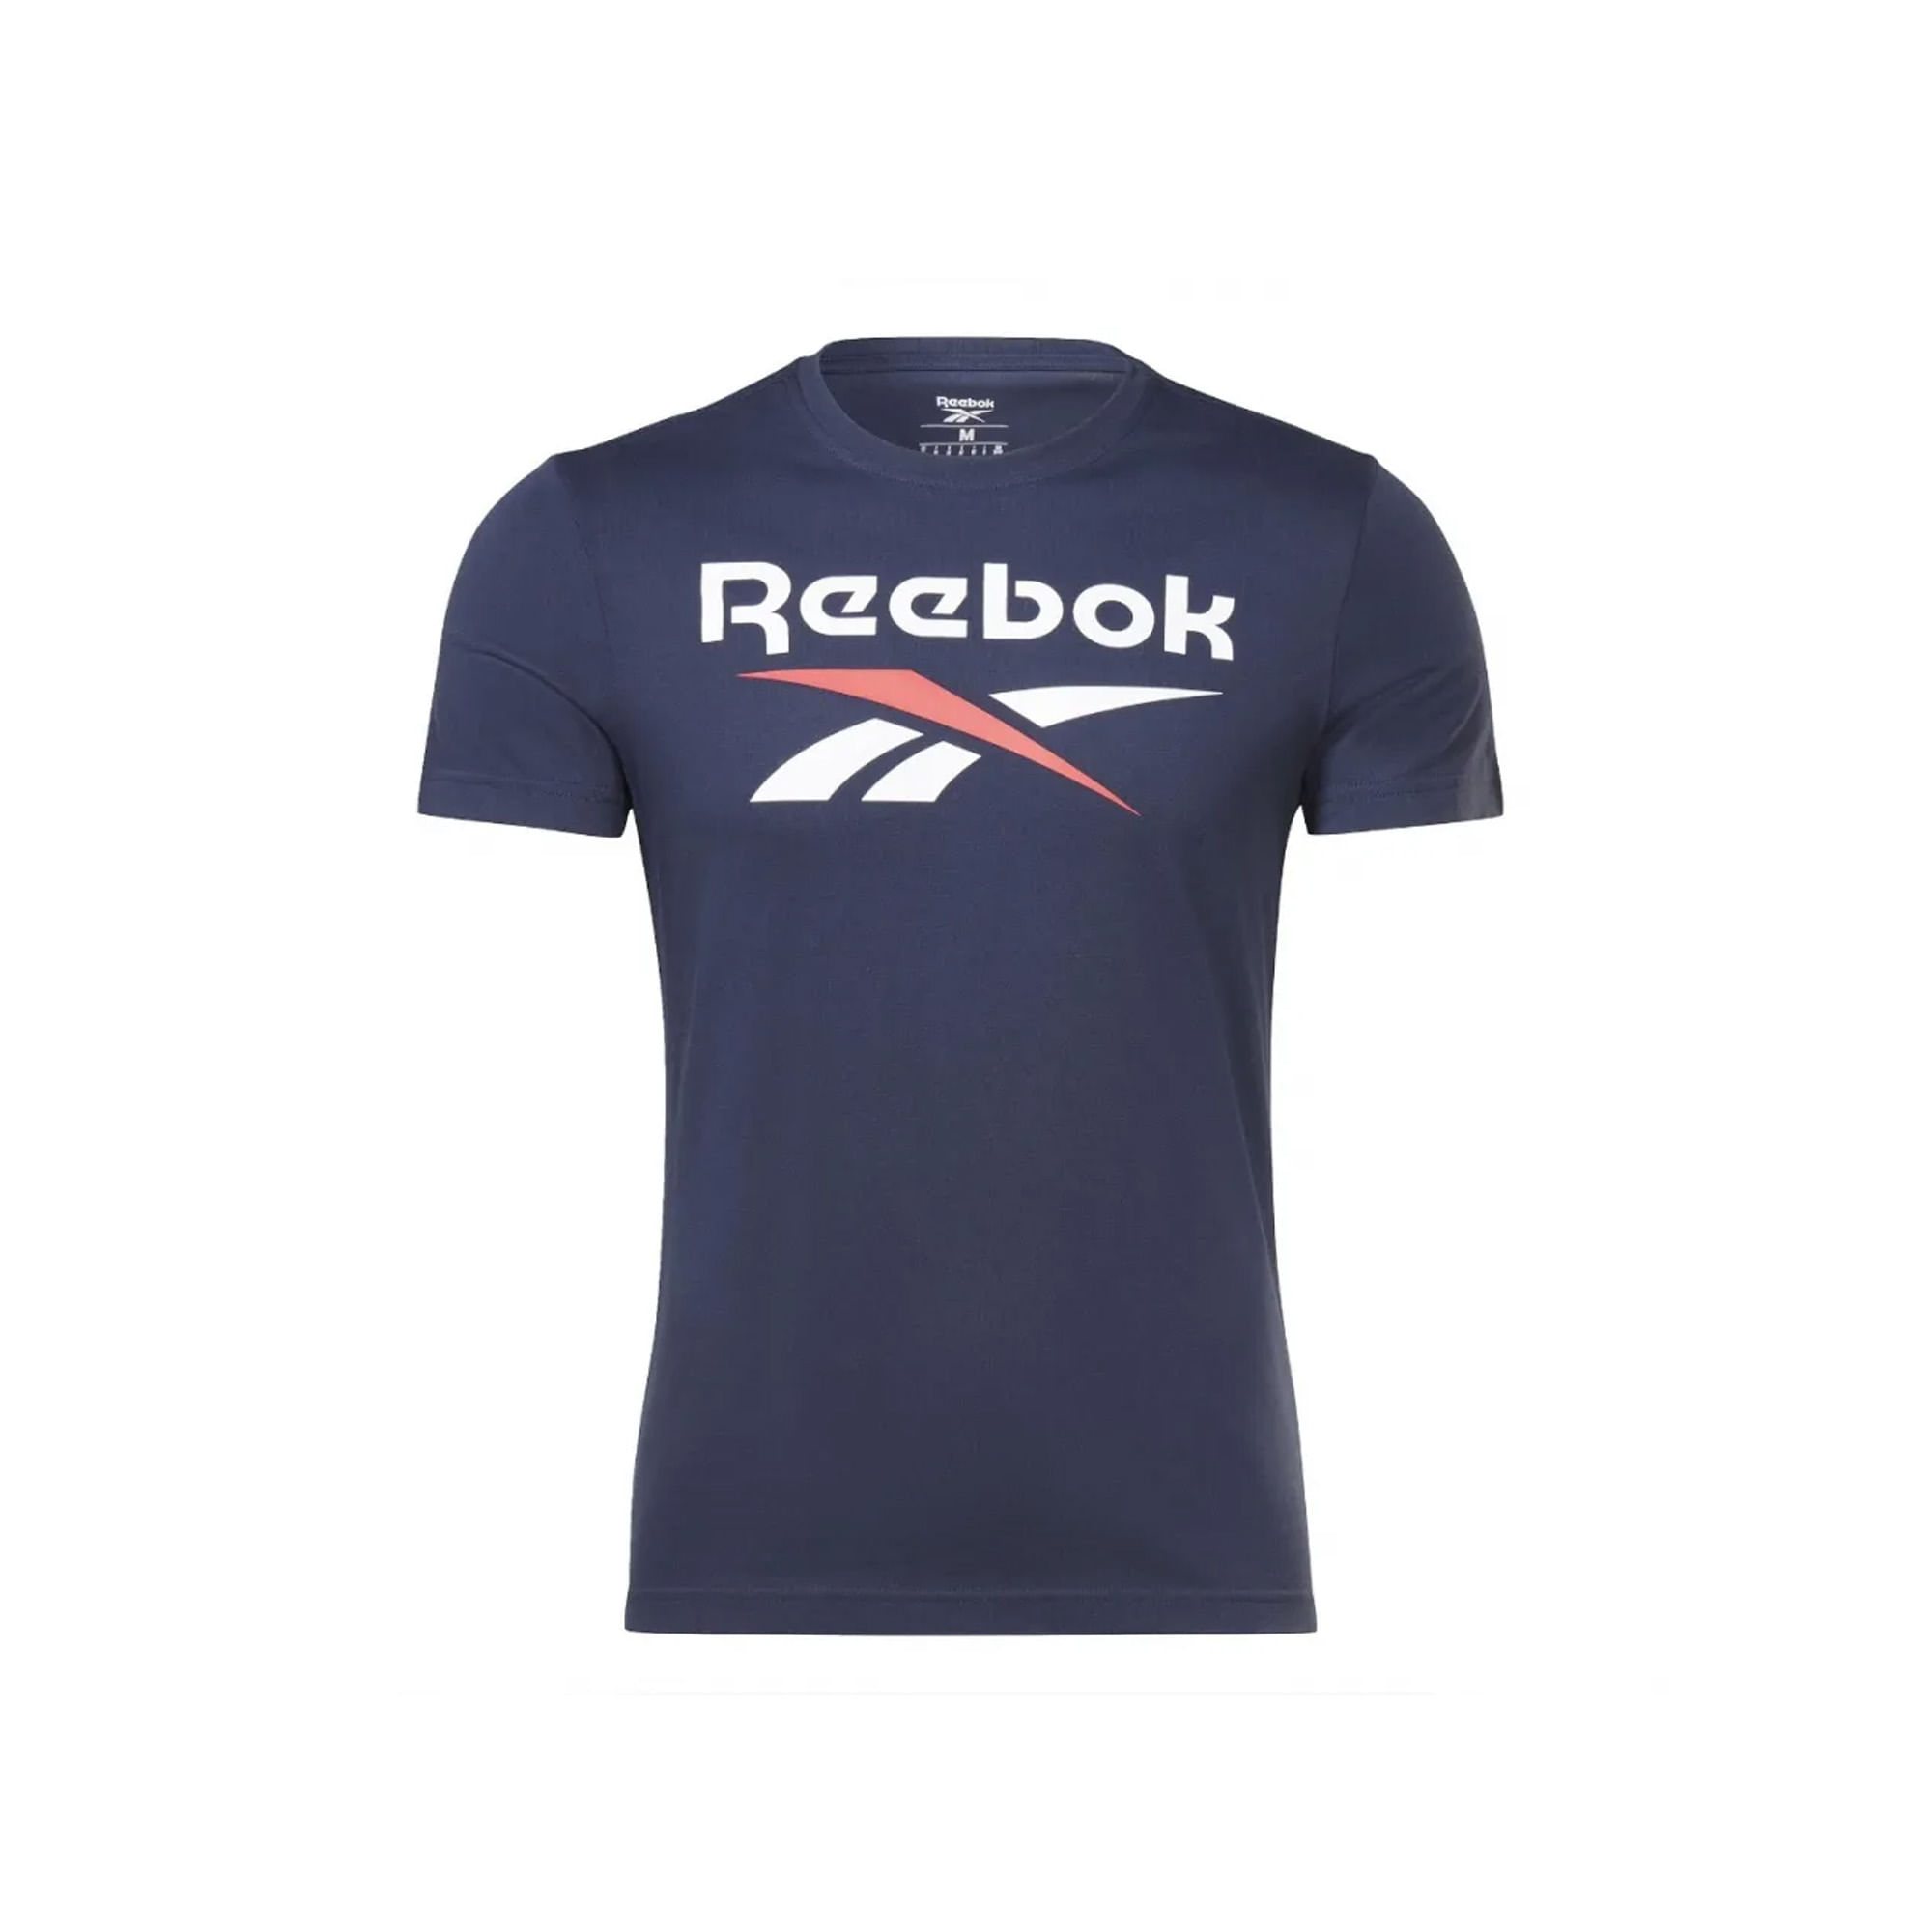 Compra Productos Camiseta Reebok Hombre Online